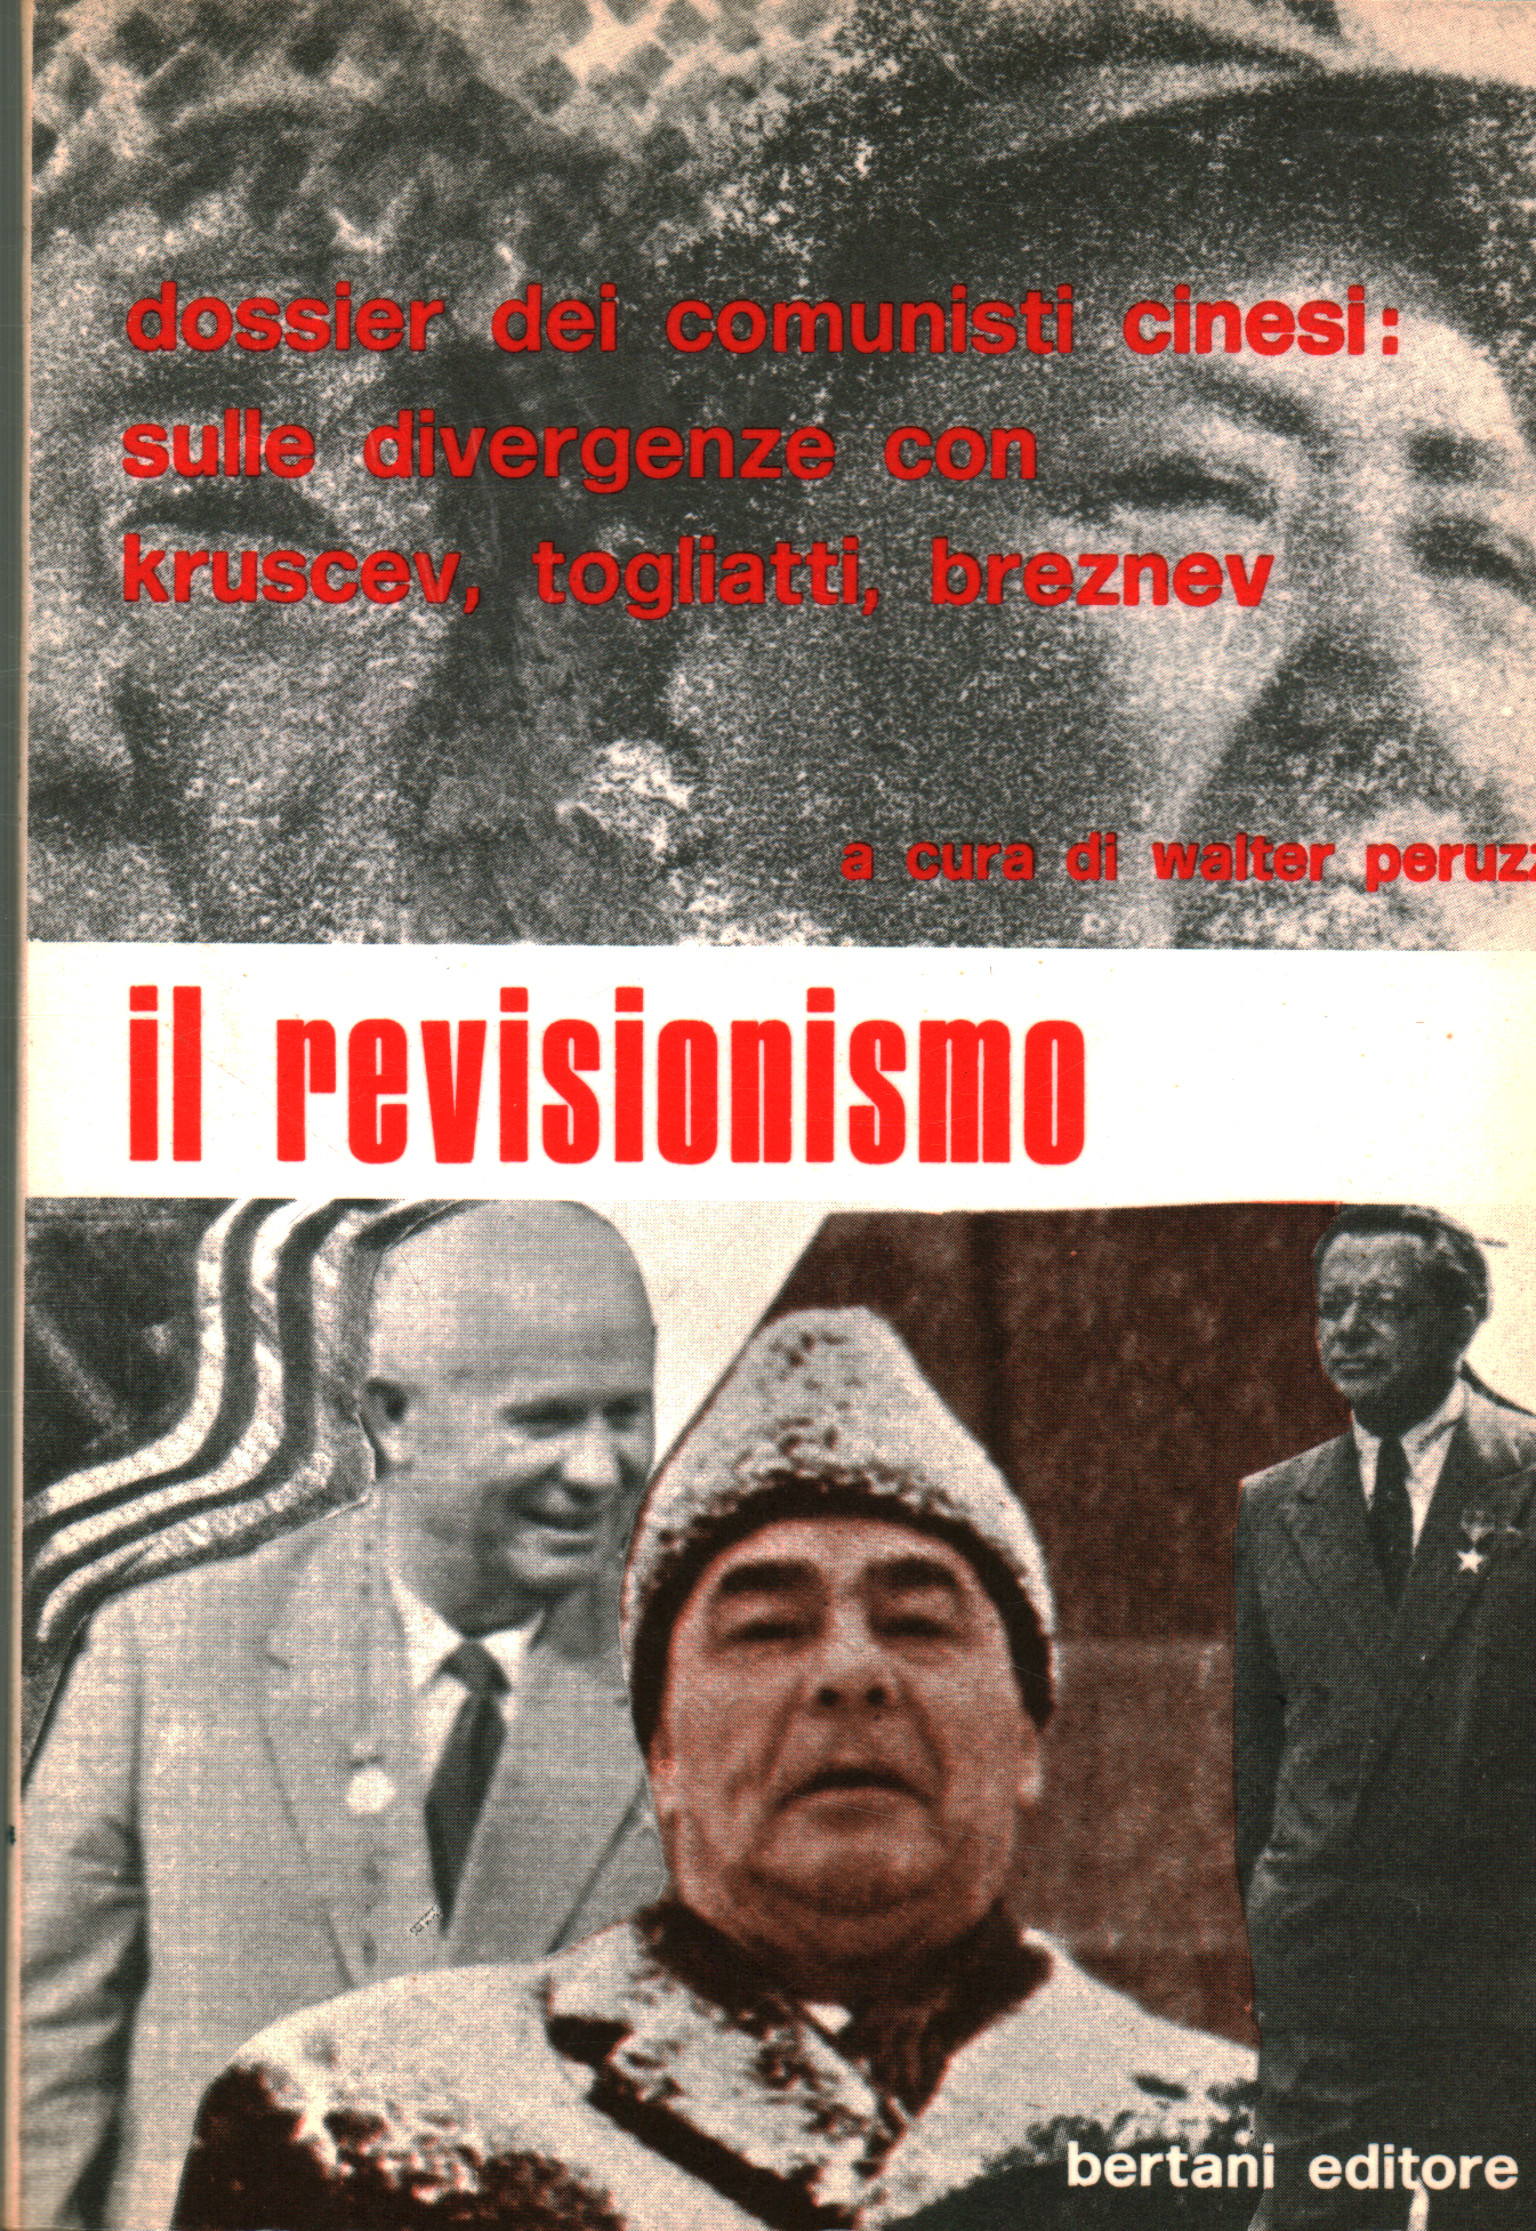 Révisionnisme, Walter Peruzzi